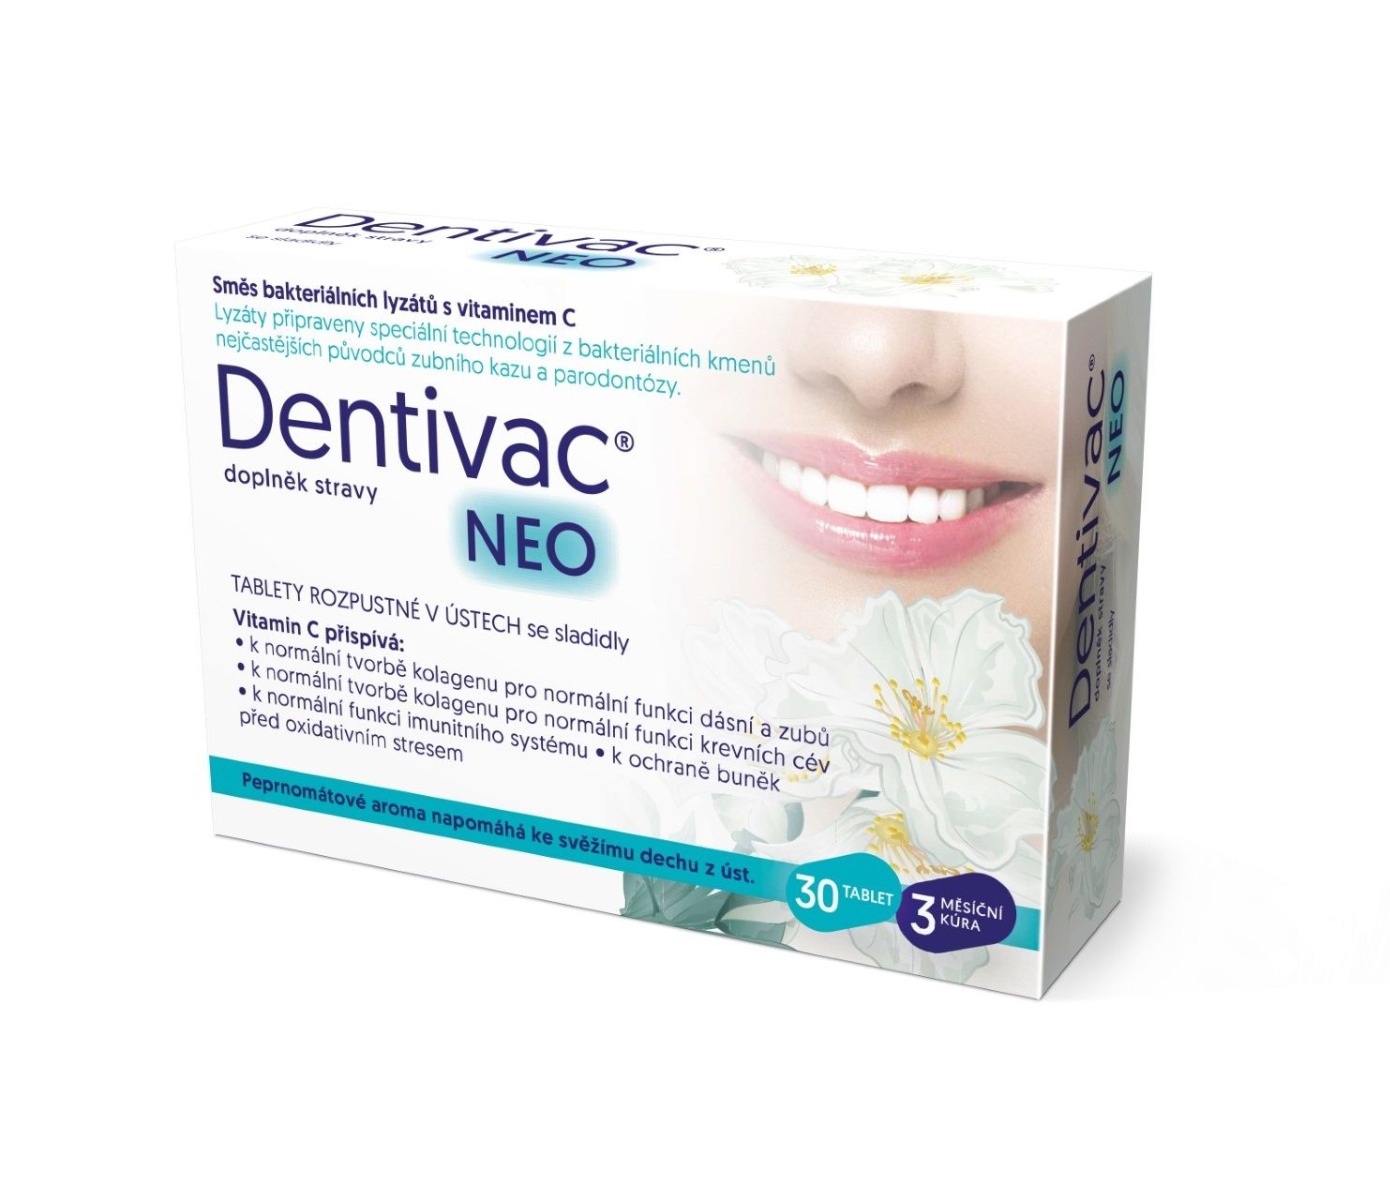 Dentivac Neo Tablety rozpustné v ústech se sladidly 30 tablet Dentivac Neo